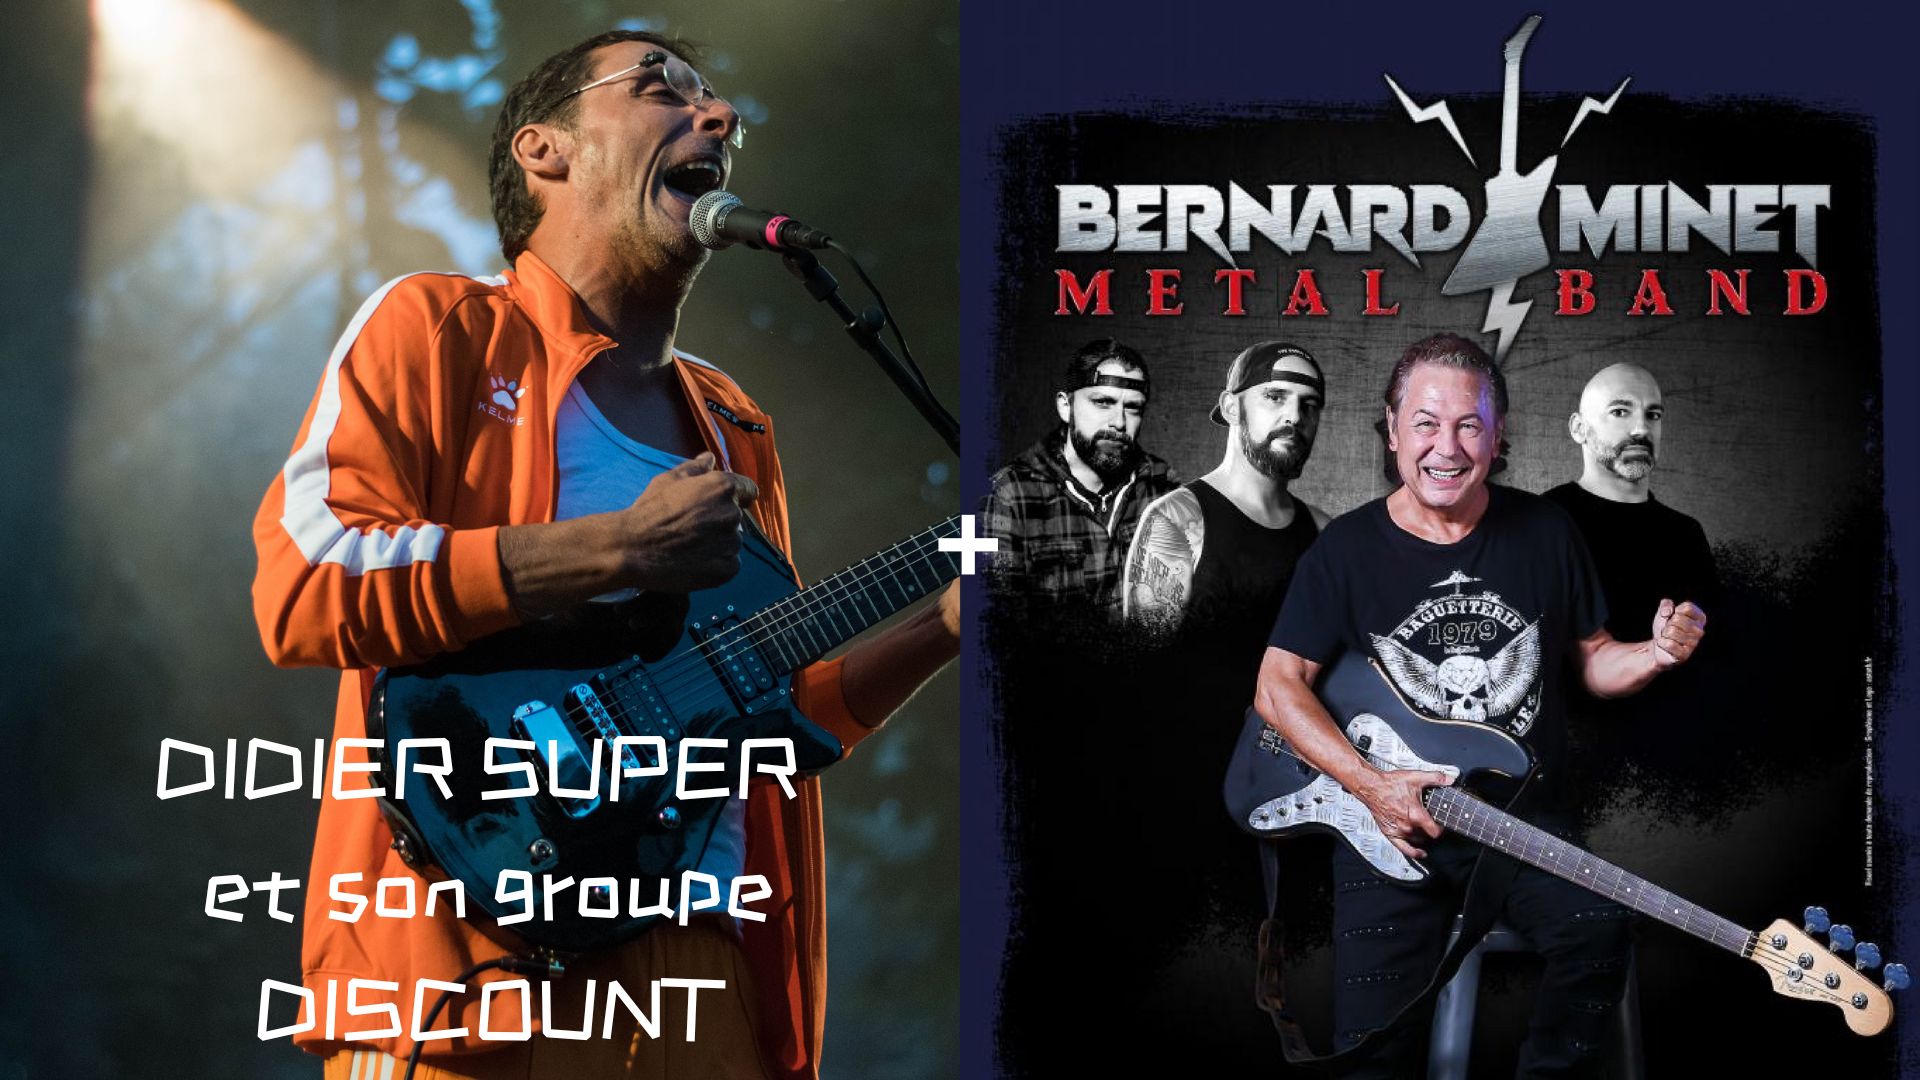 Didier Super et son groupe Discount + Bernard Minet Metal Band @ La Ruche Verrière – Lodelinsart